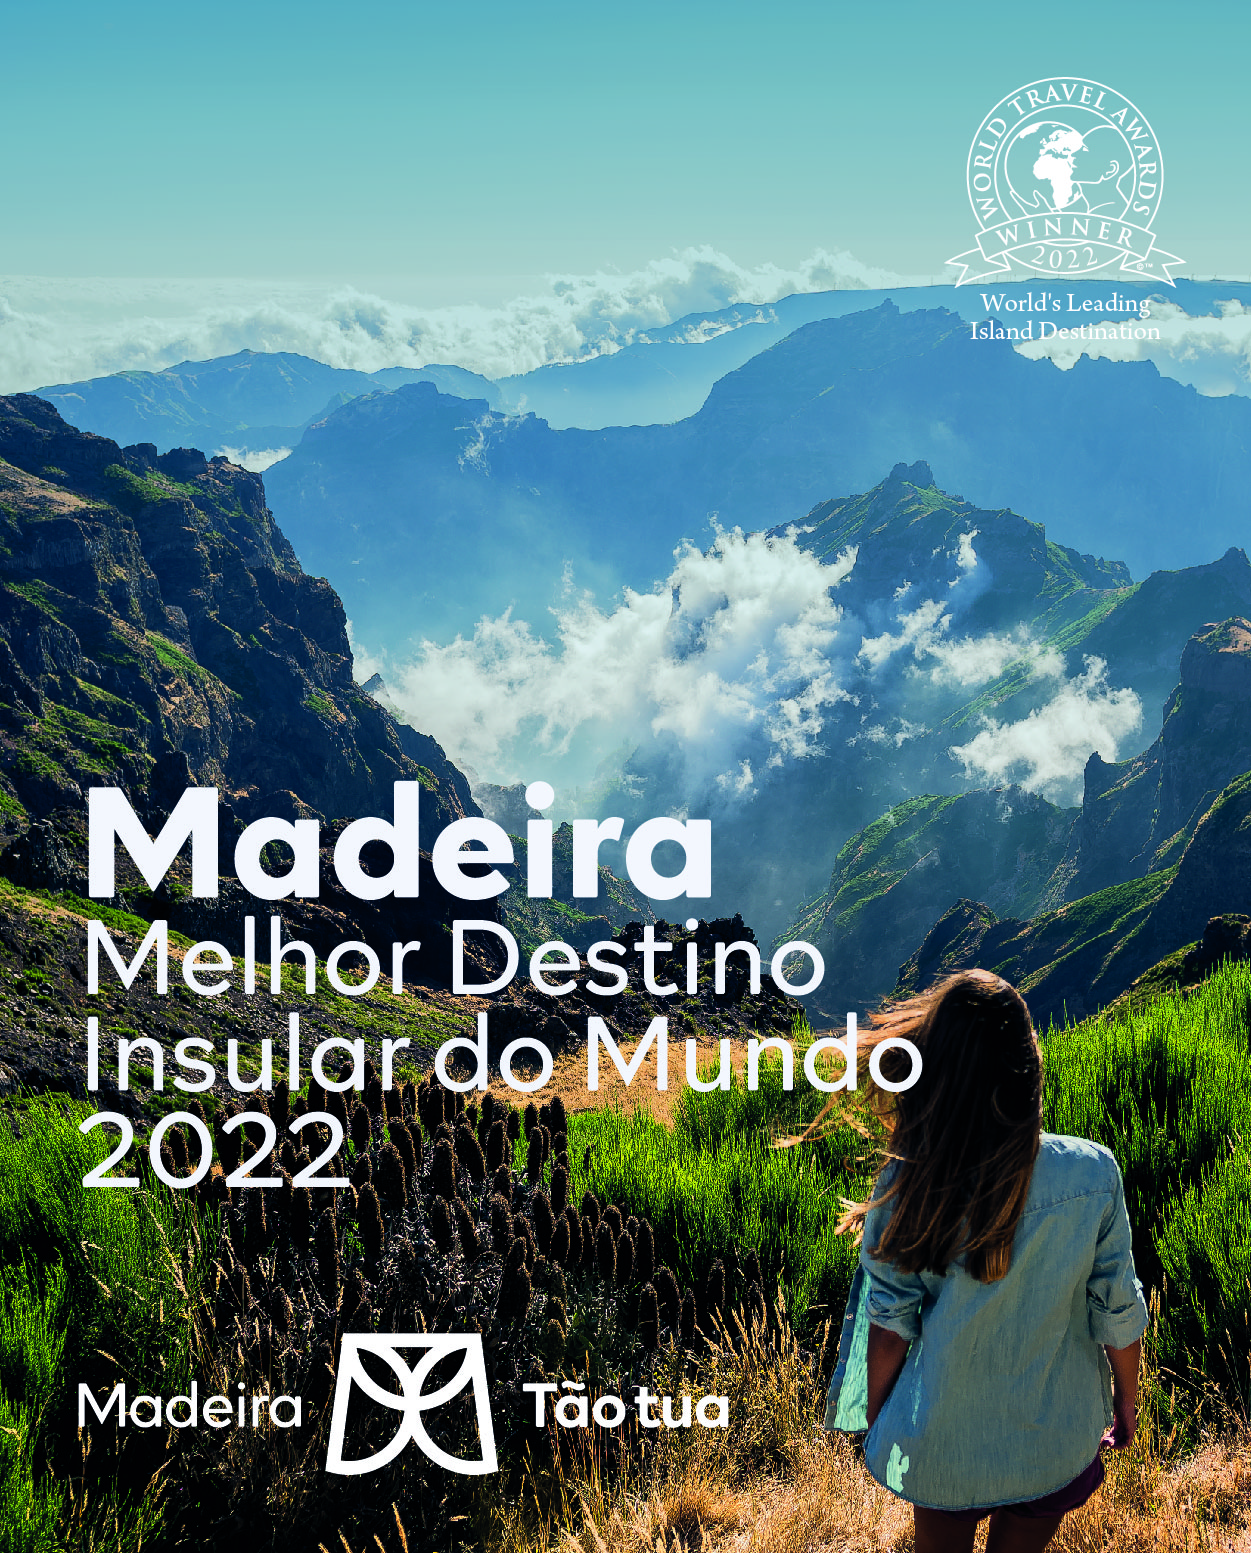 Madeira ‘Melhor Destino Insular do Mundo’ 